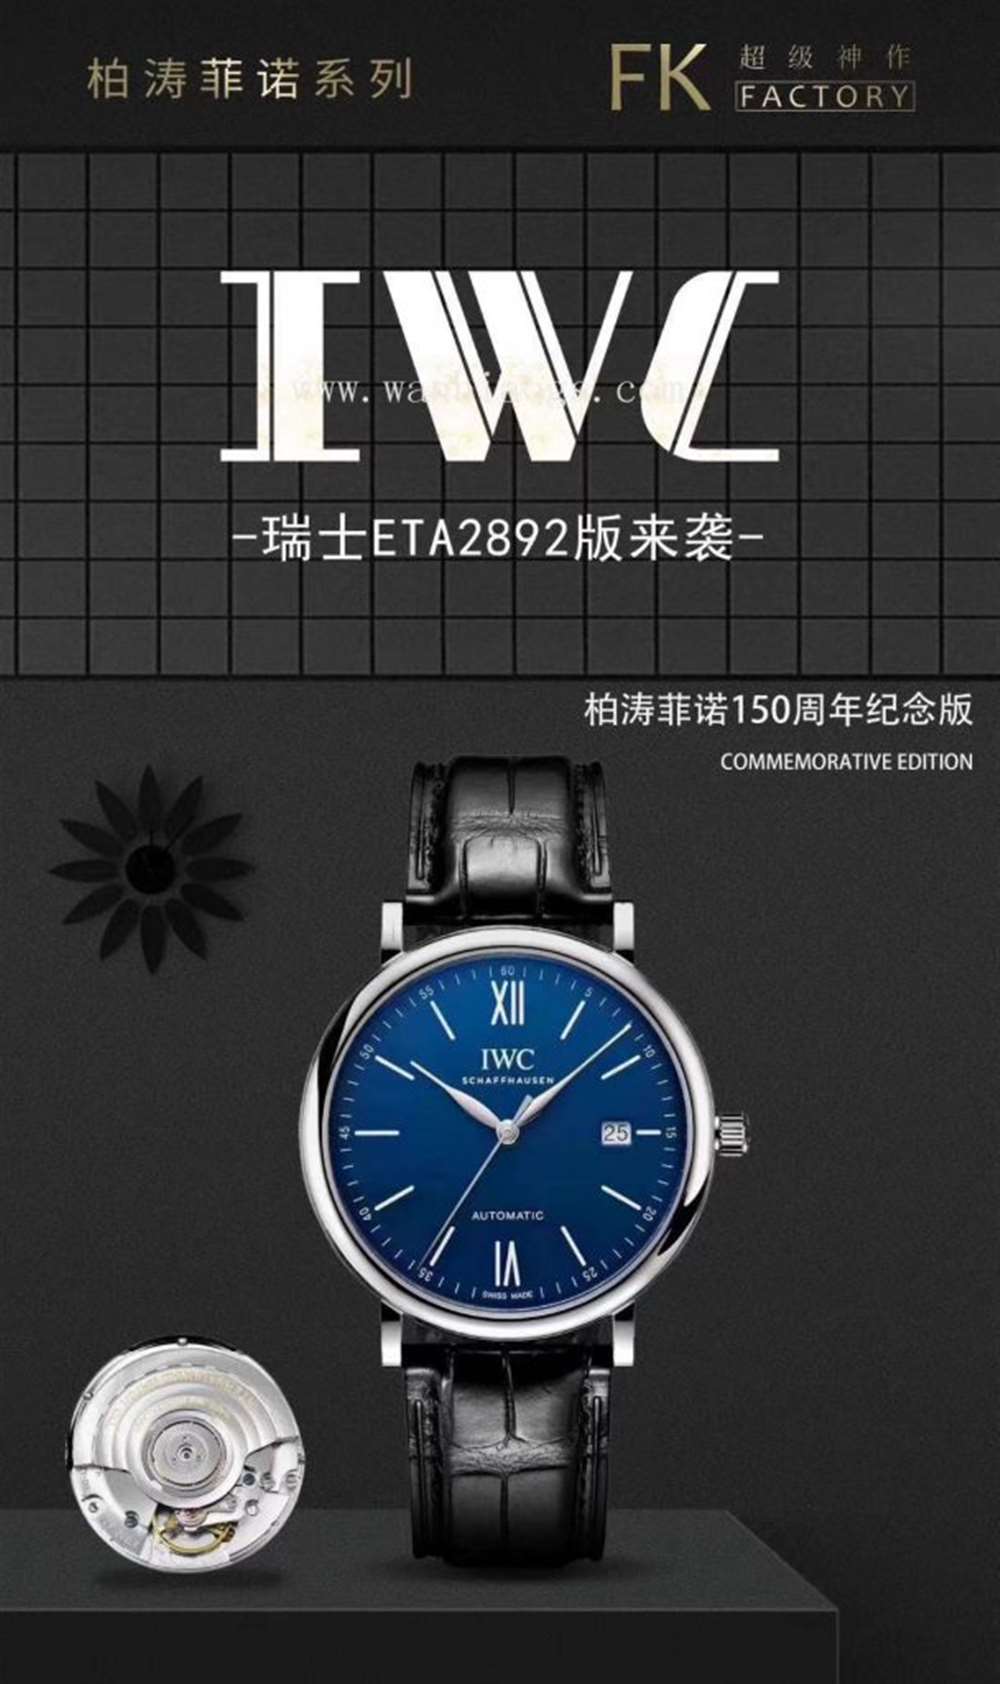 FK厂万国柏涛菲诺系列IW35630腕表—对比正品评测  第14张